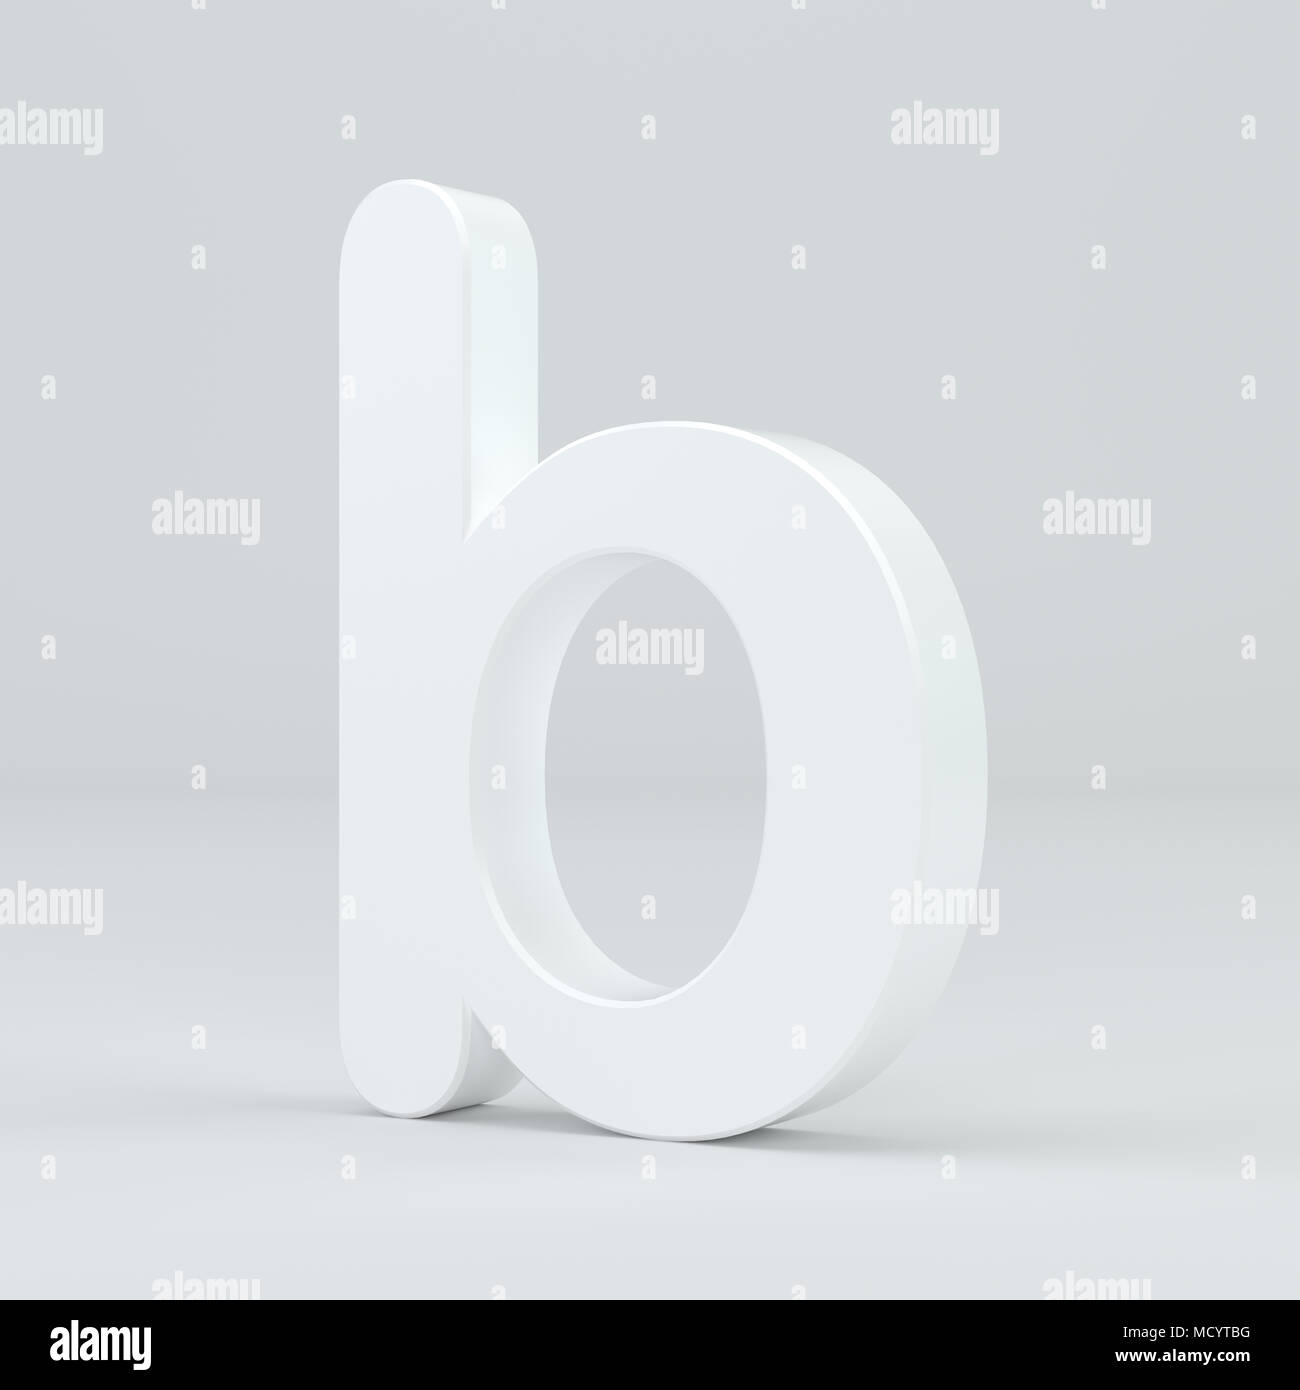 White small letter B on studio light background. 3d rendering. Stock Photo